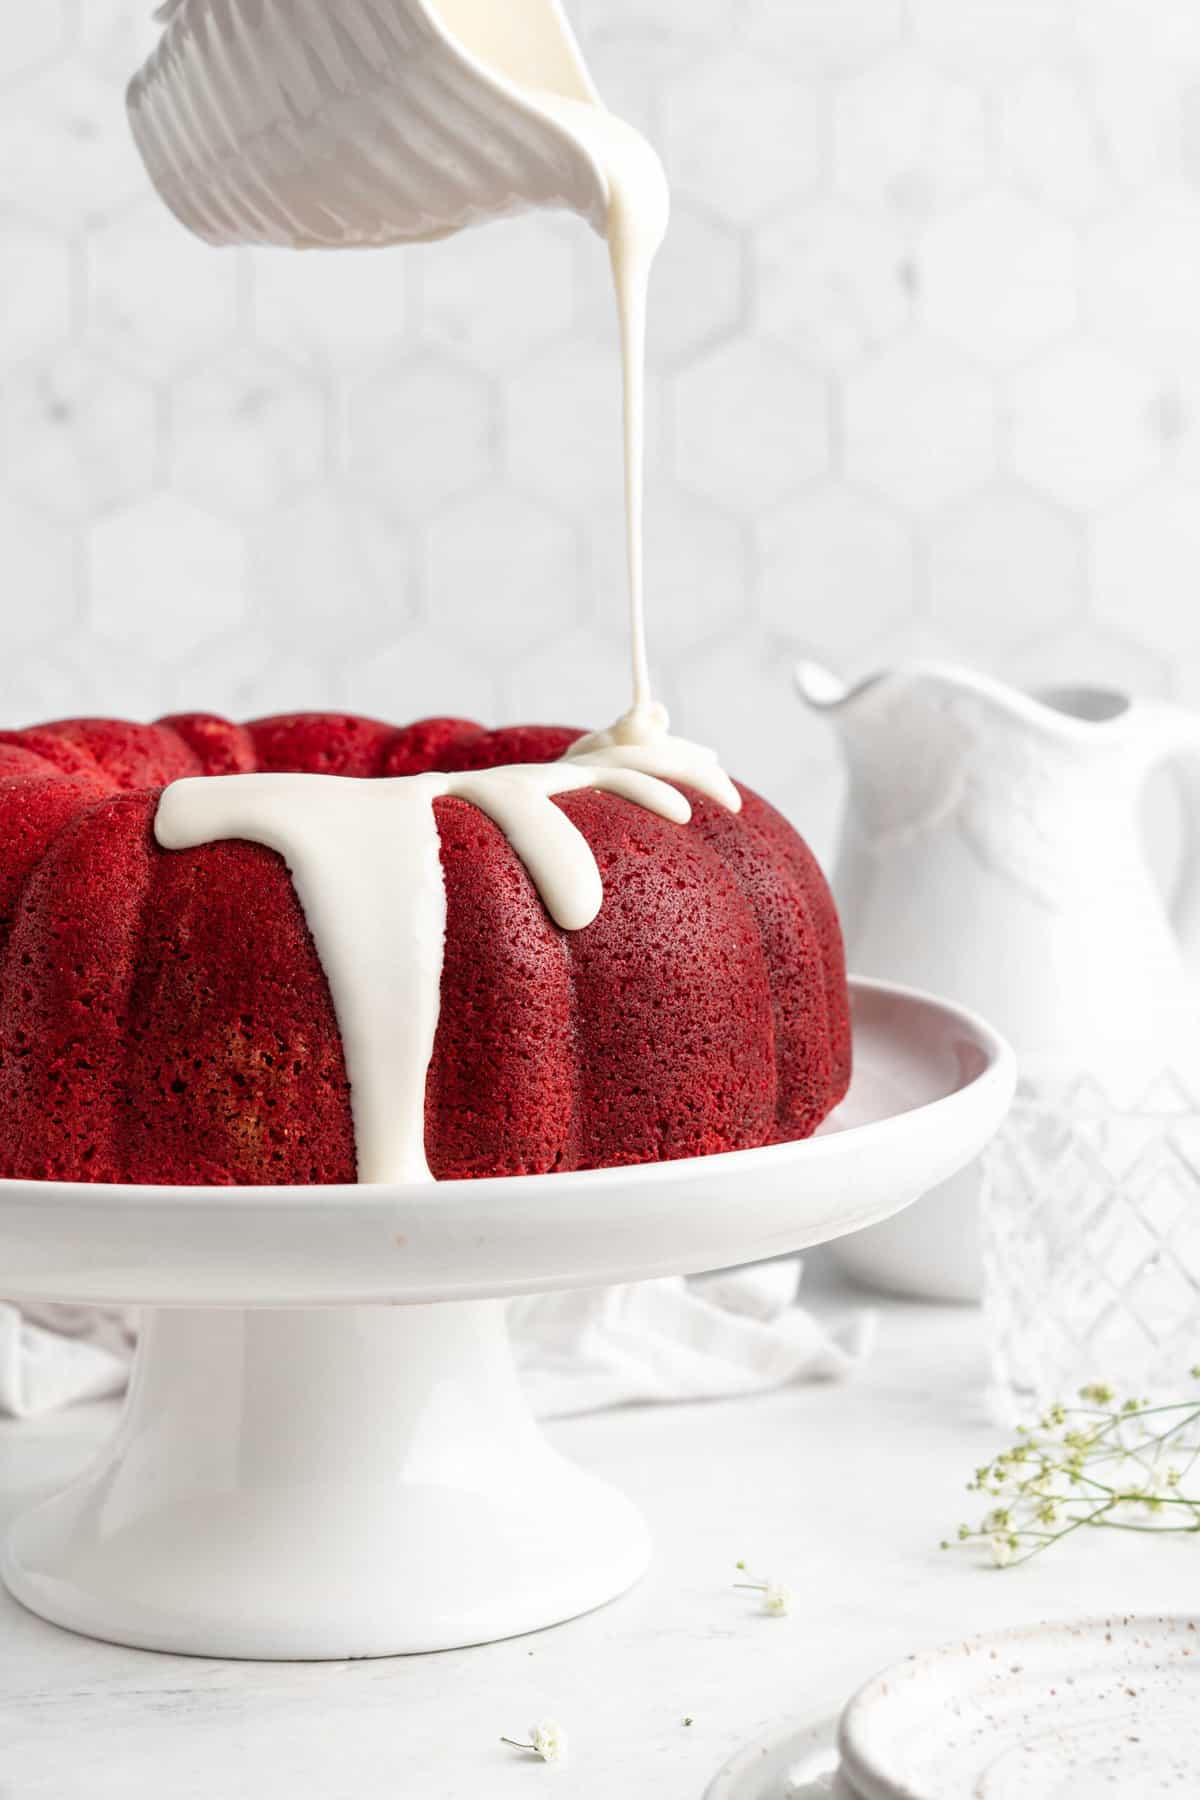 https://grandbaby-cakes.com/wp-content/uploads/2022/09/Red-Velvet-Bundt-Cake0285-scaled.jpg